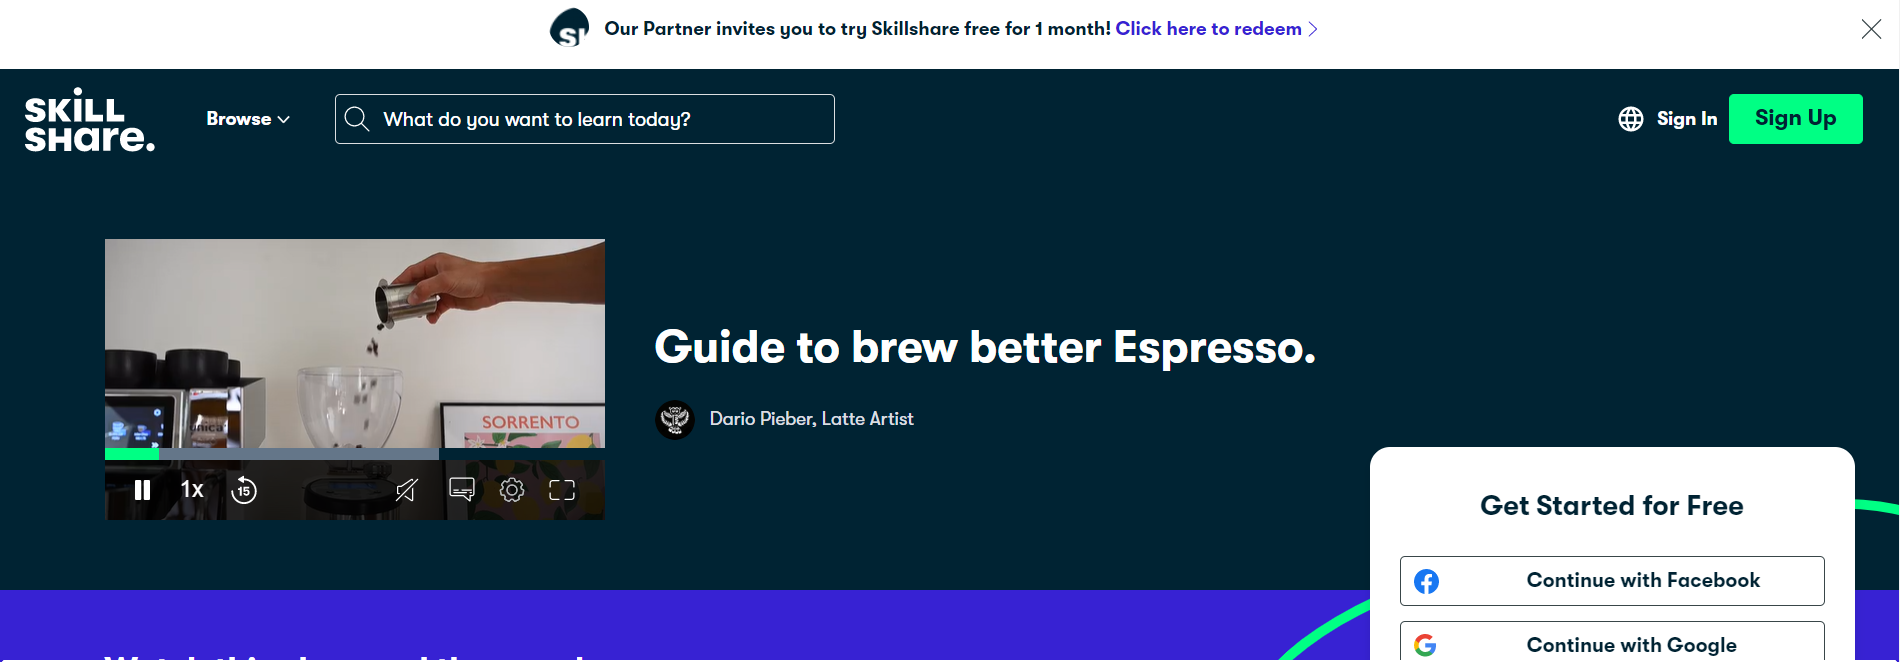 Guide To Brew Better Espresso